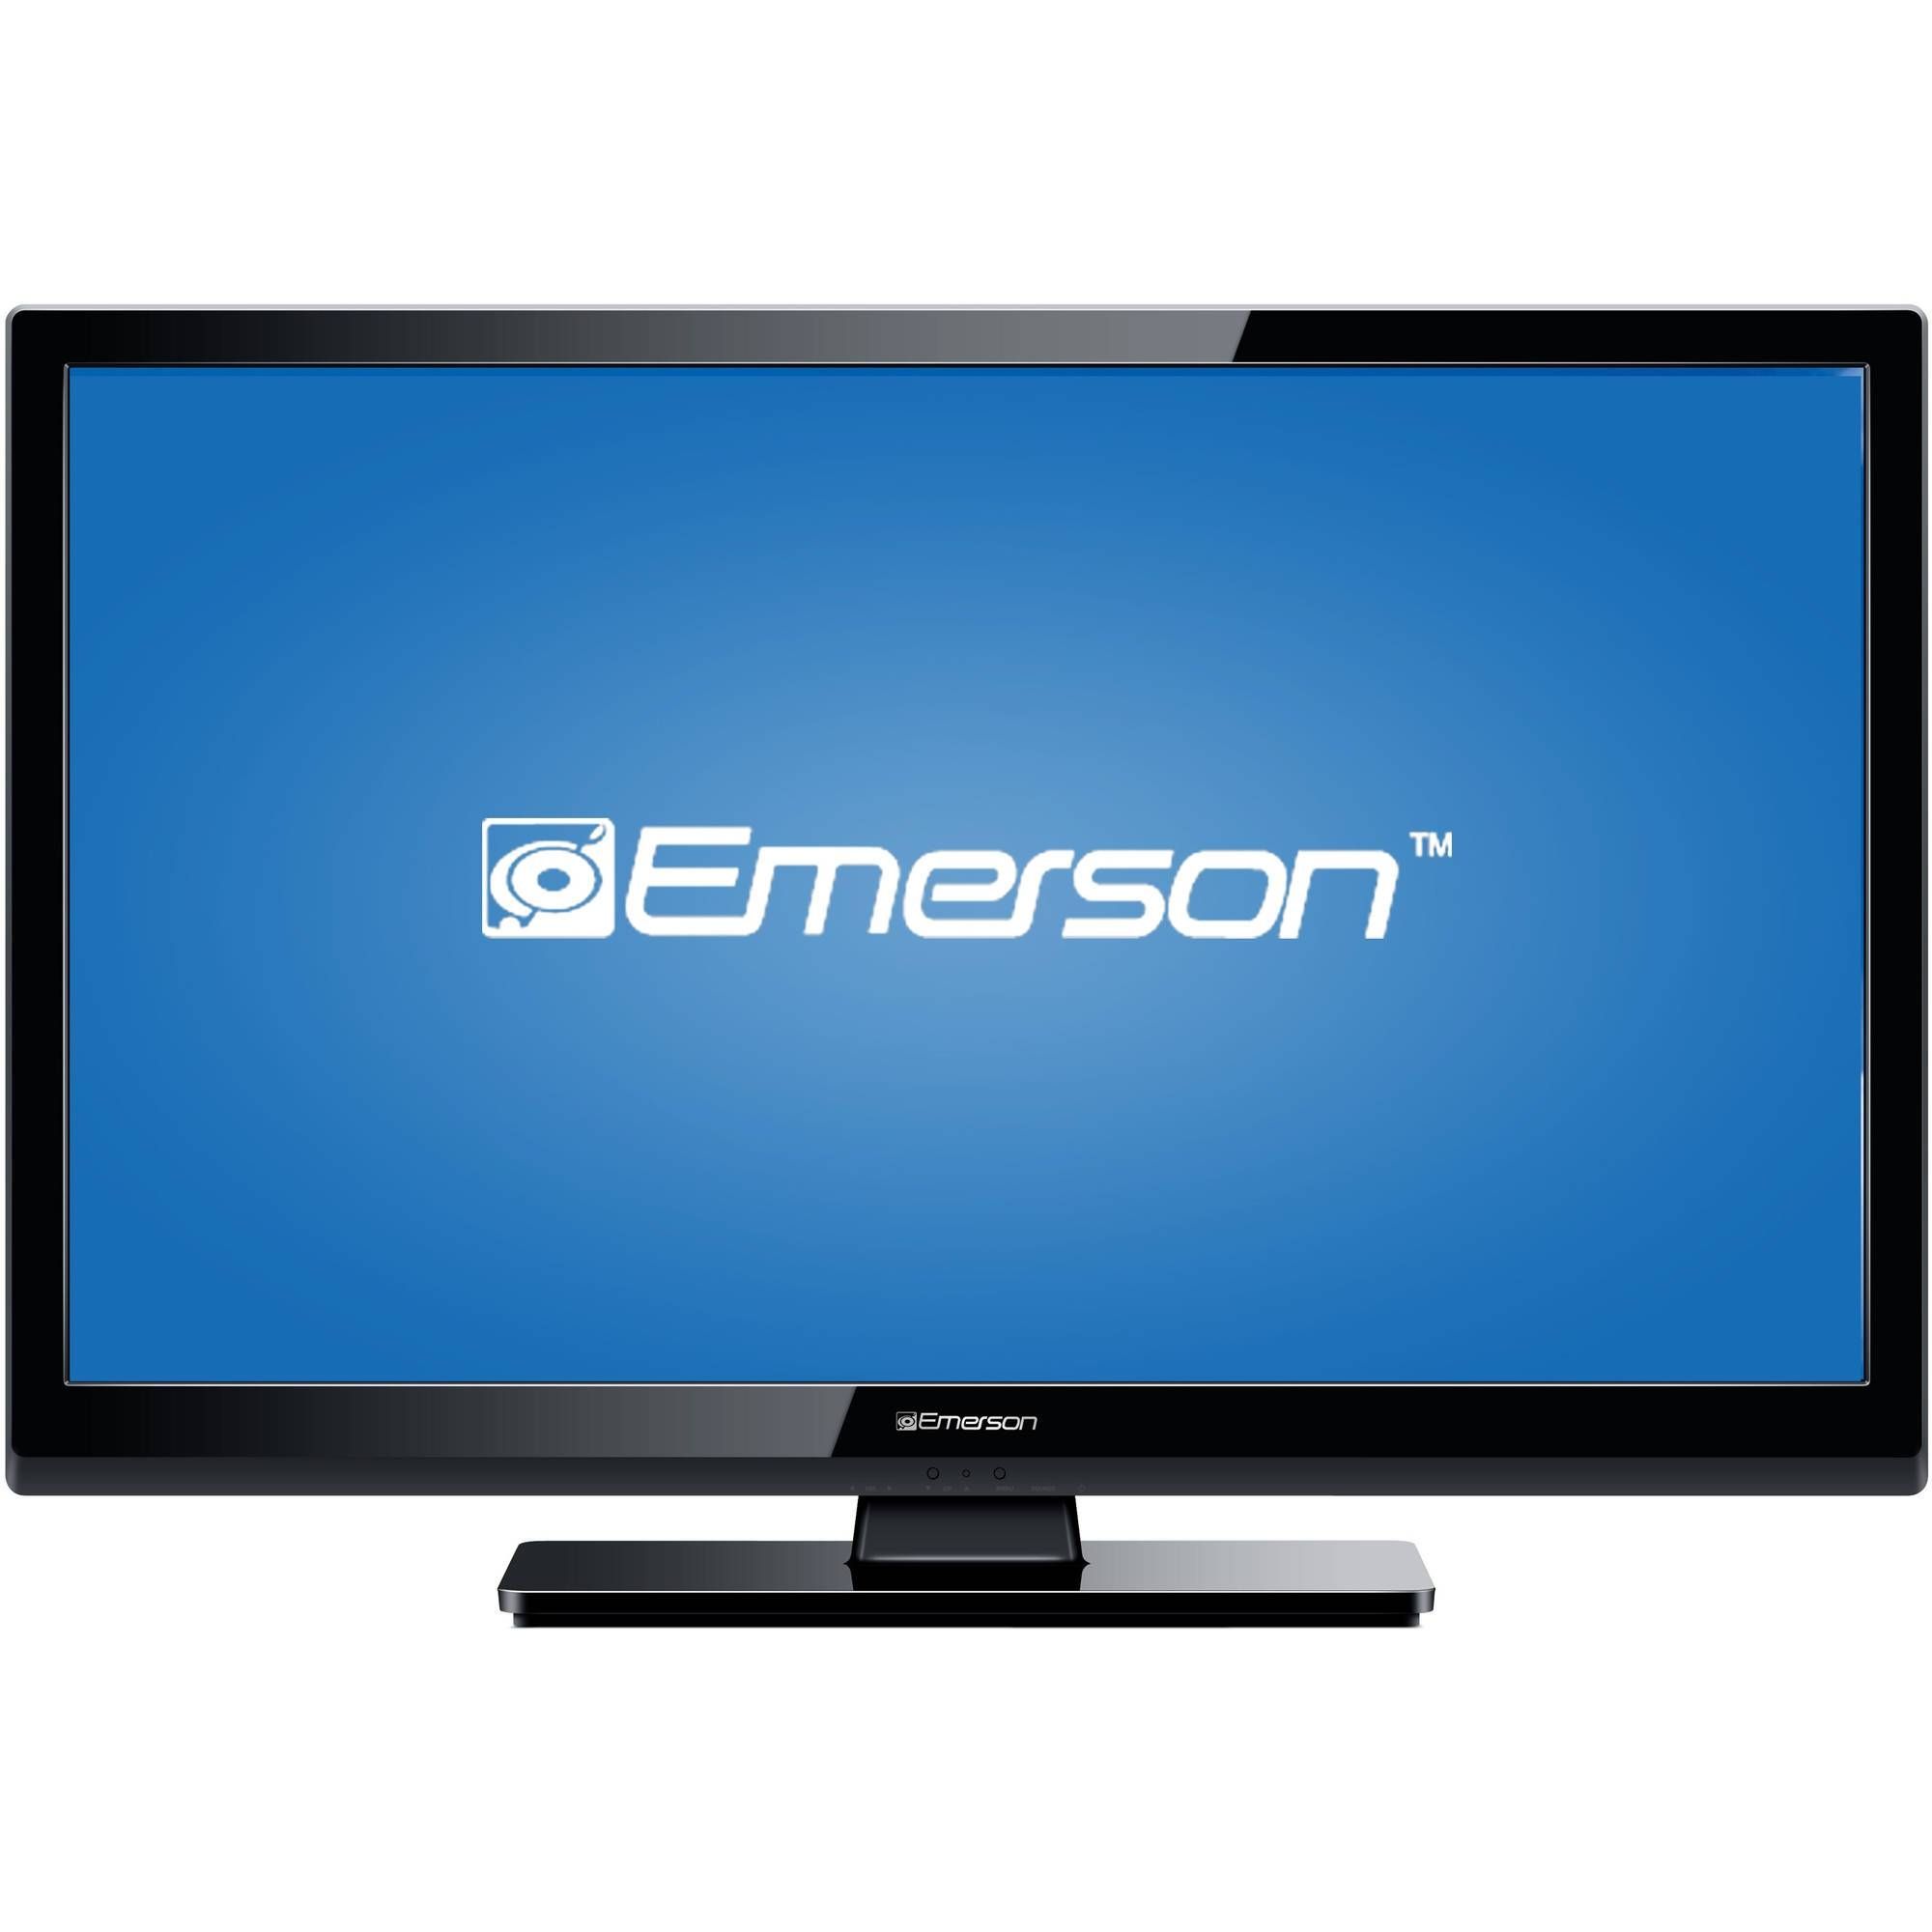 Emerson Lf320em4 32" 720p 60hz Class Led Hdtv – Walmart Regarding Emerson Tv Stands (View 5 of 15)